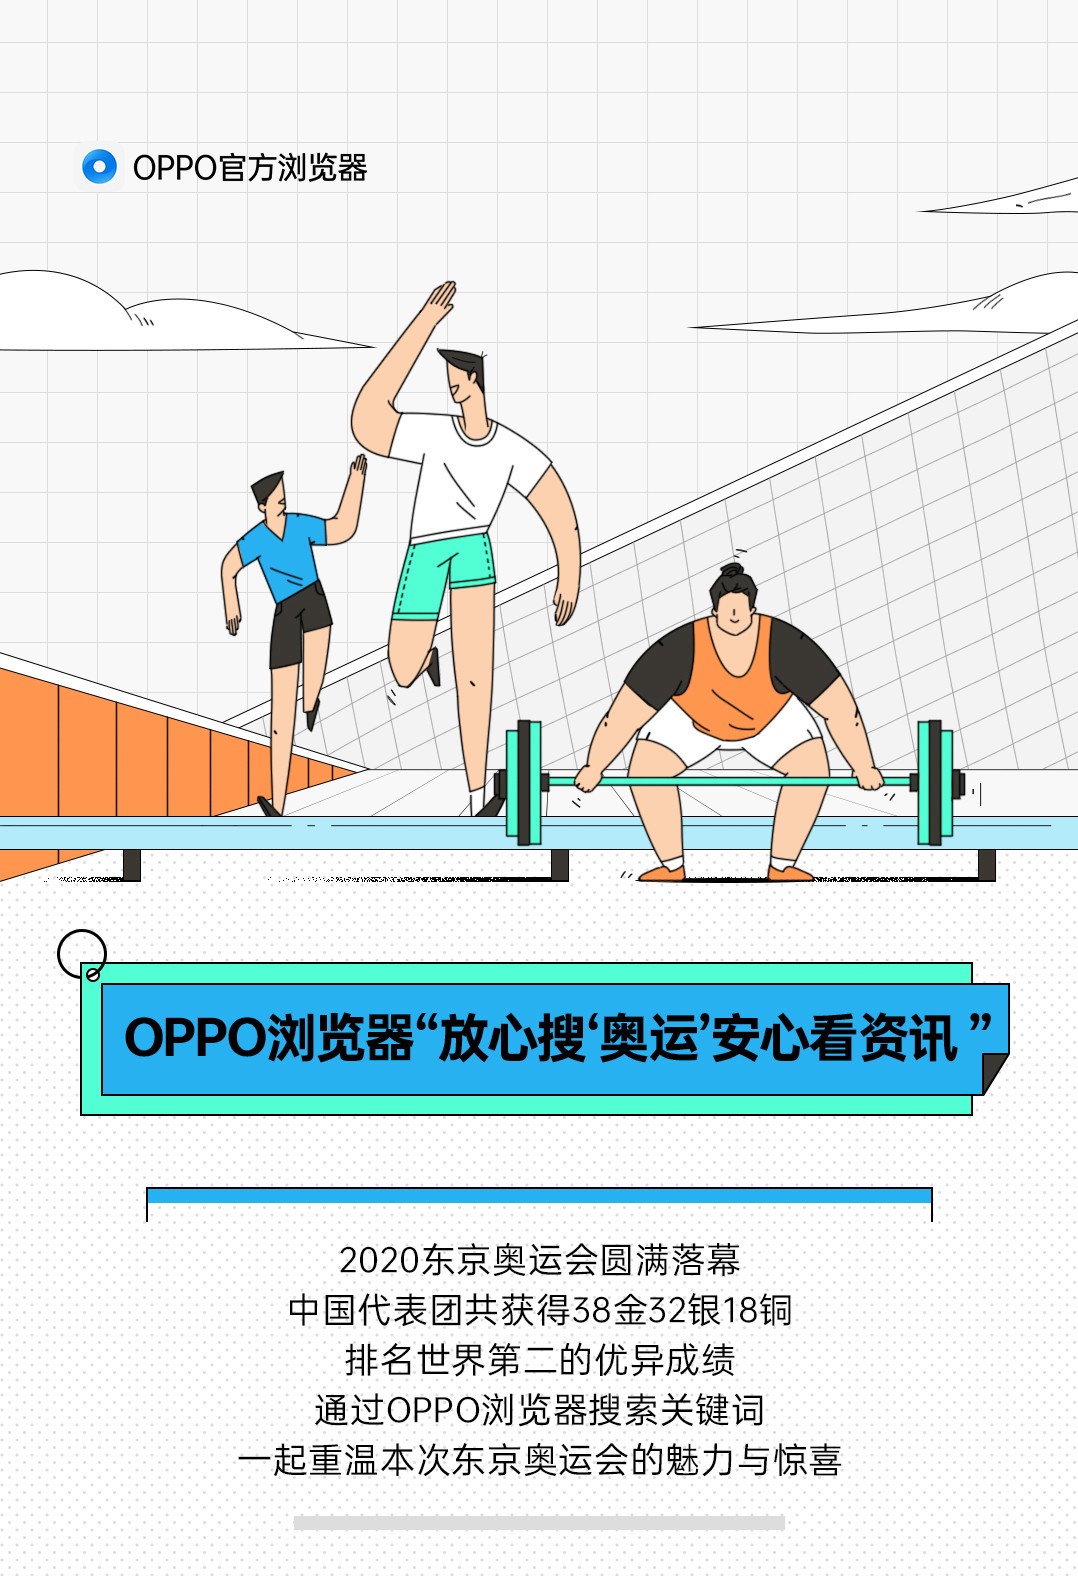 OPPO浏览器“放心搜‘奥运’ 安心看资讯”全程守护用户隐私